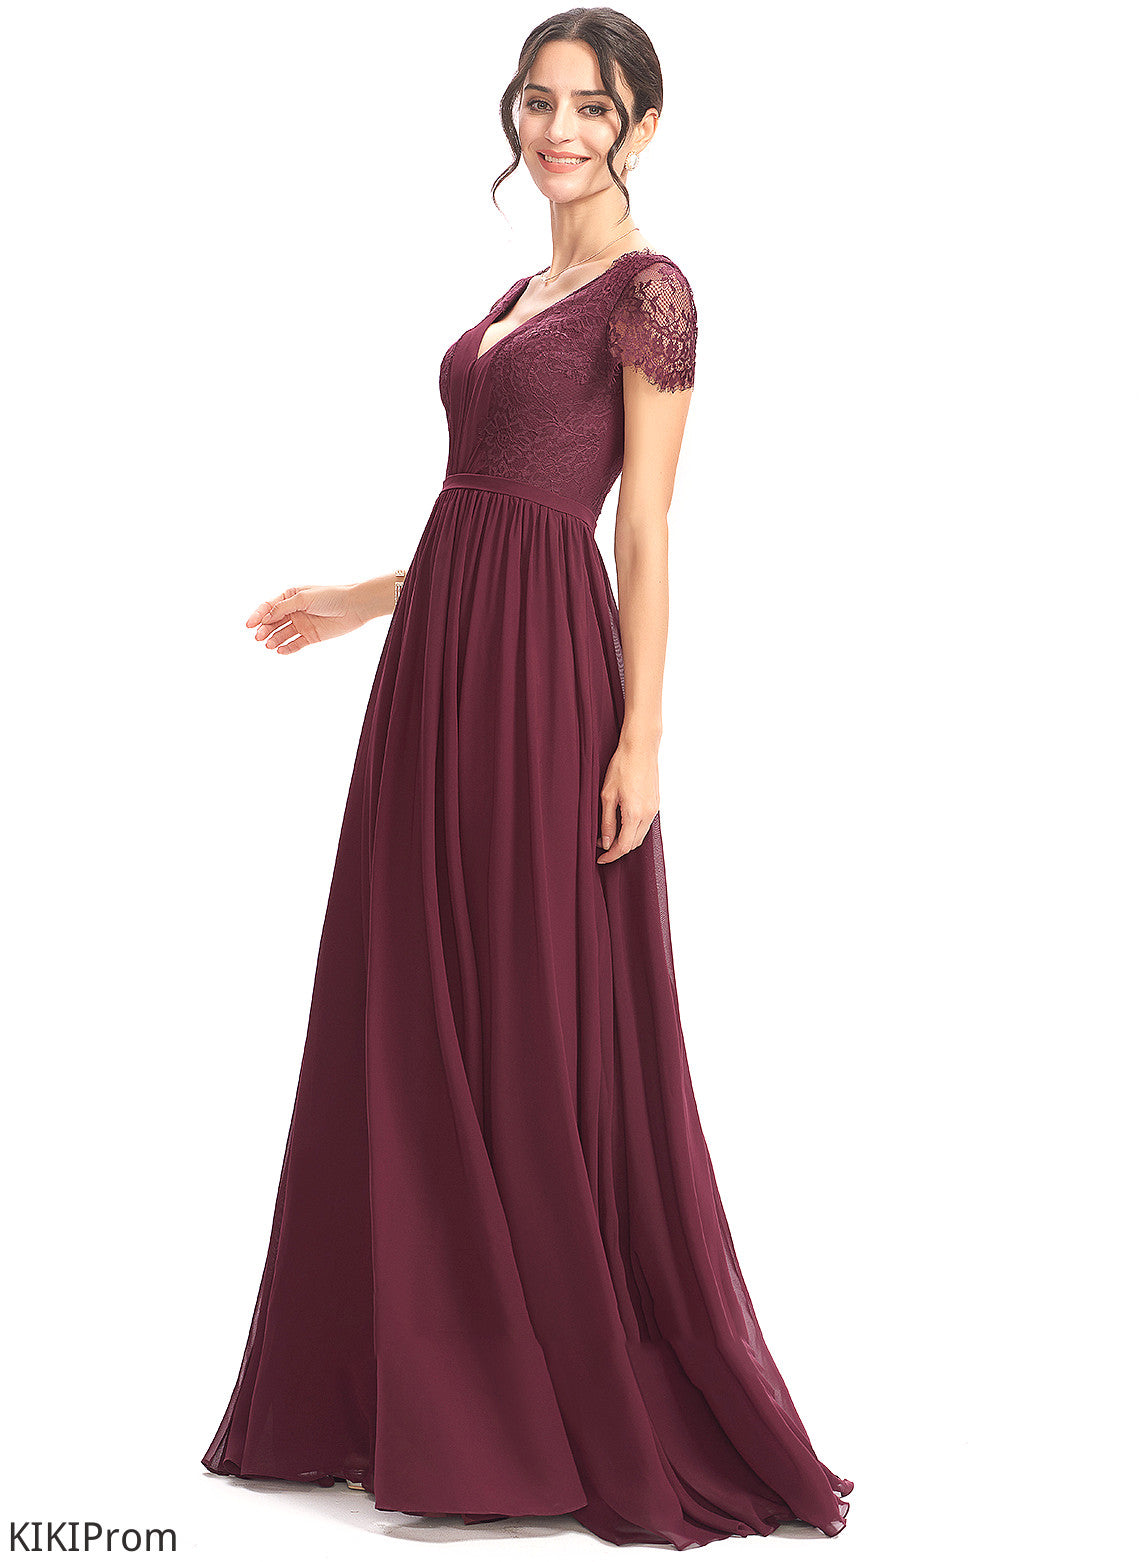 Silhouette Floor-Length Length A-Line V-neck Embellishment Neckline Lace Fabric Trinity V-Neck A-Line/Princess Bridesmaid Dresses